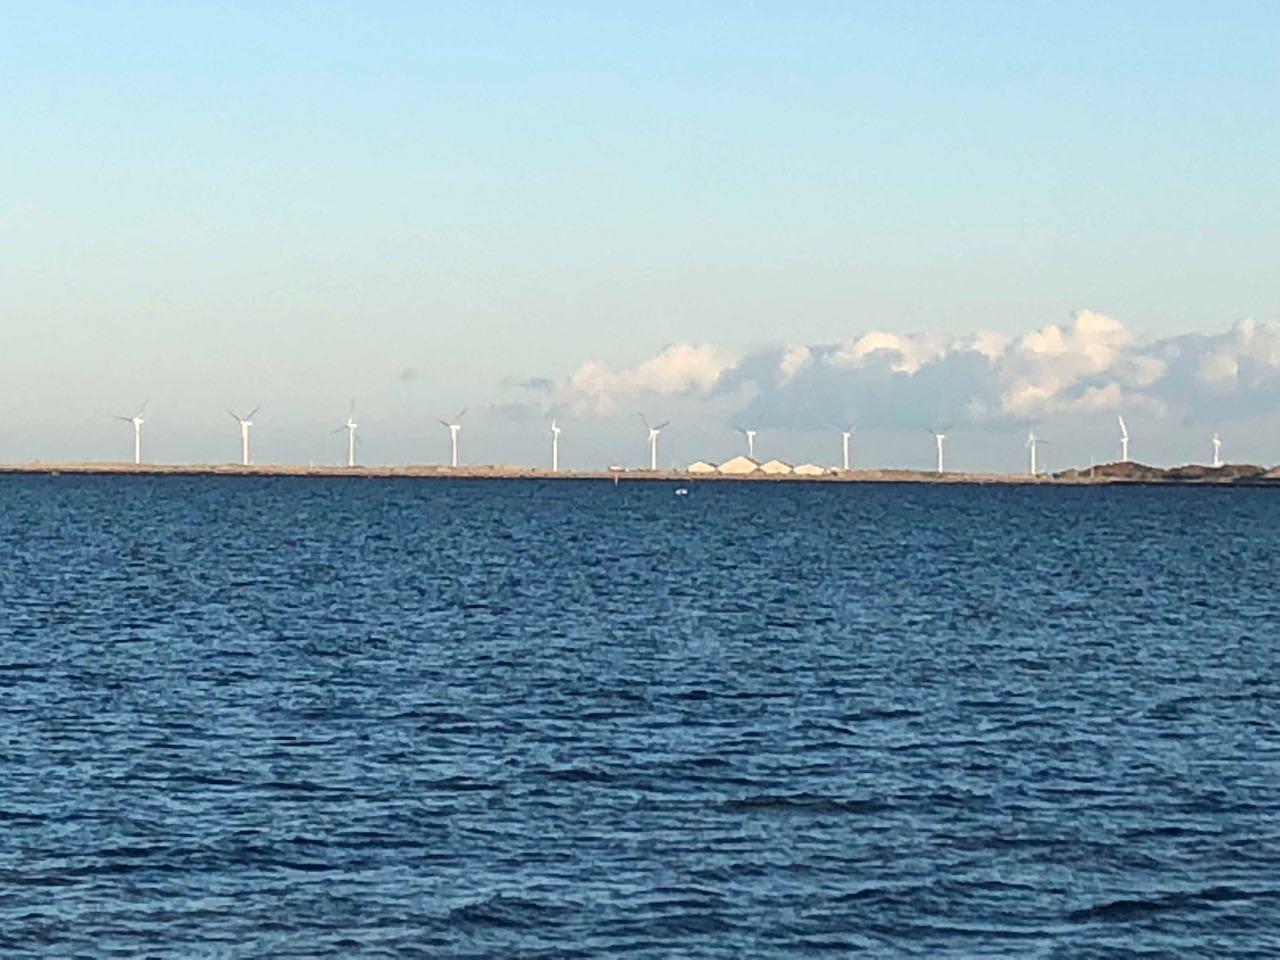 Morska farma wiatrowa Middelgrunden w pobliżu Kopenhagi. Fot. BiznesAlert.pl/Bartłomiej Sawicki